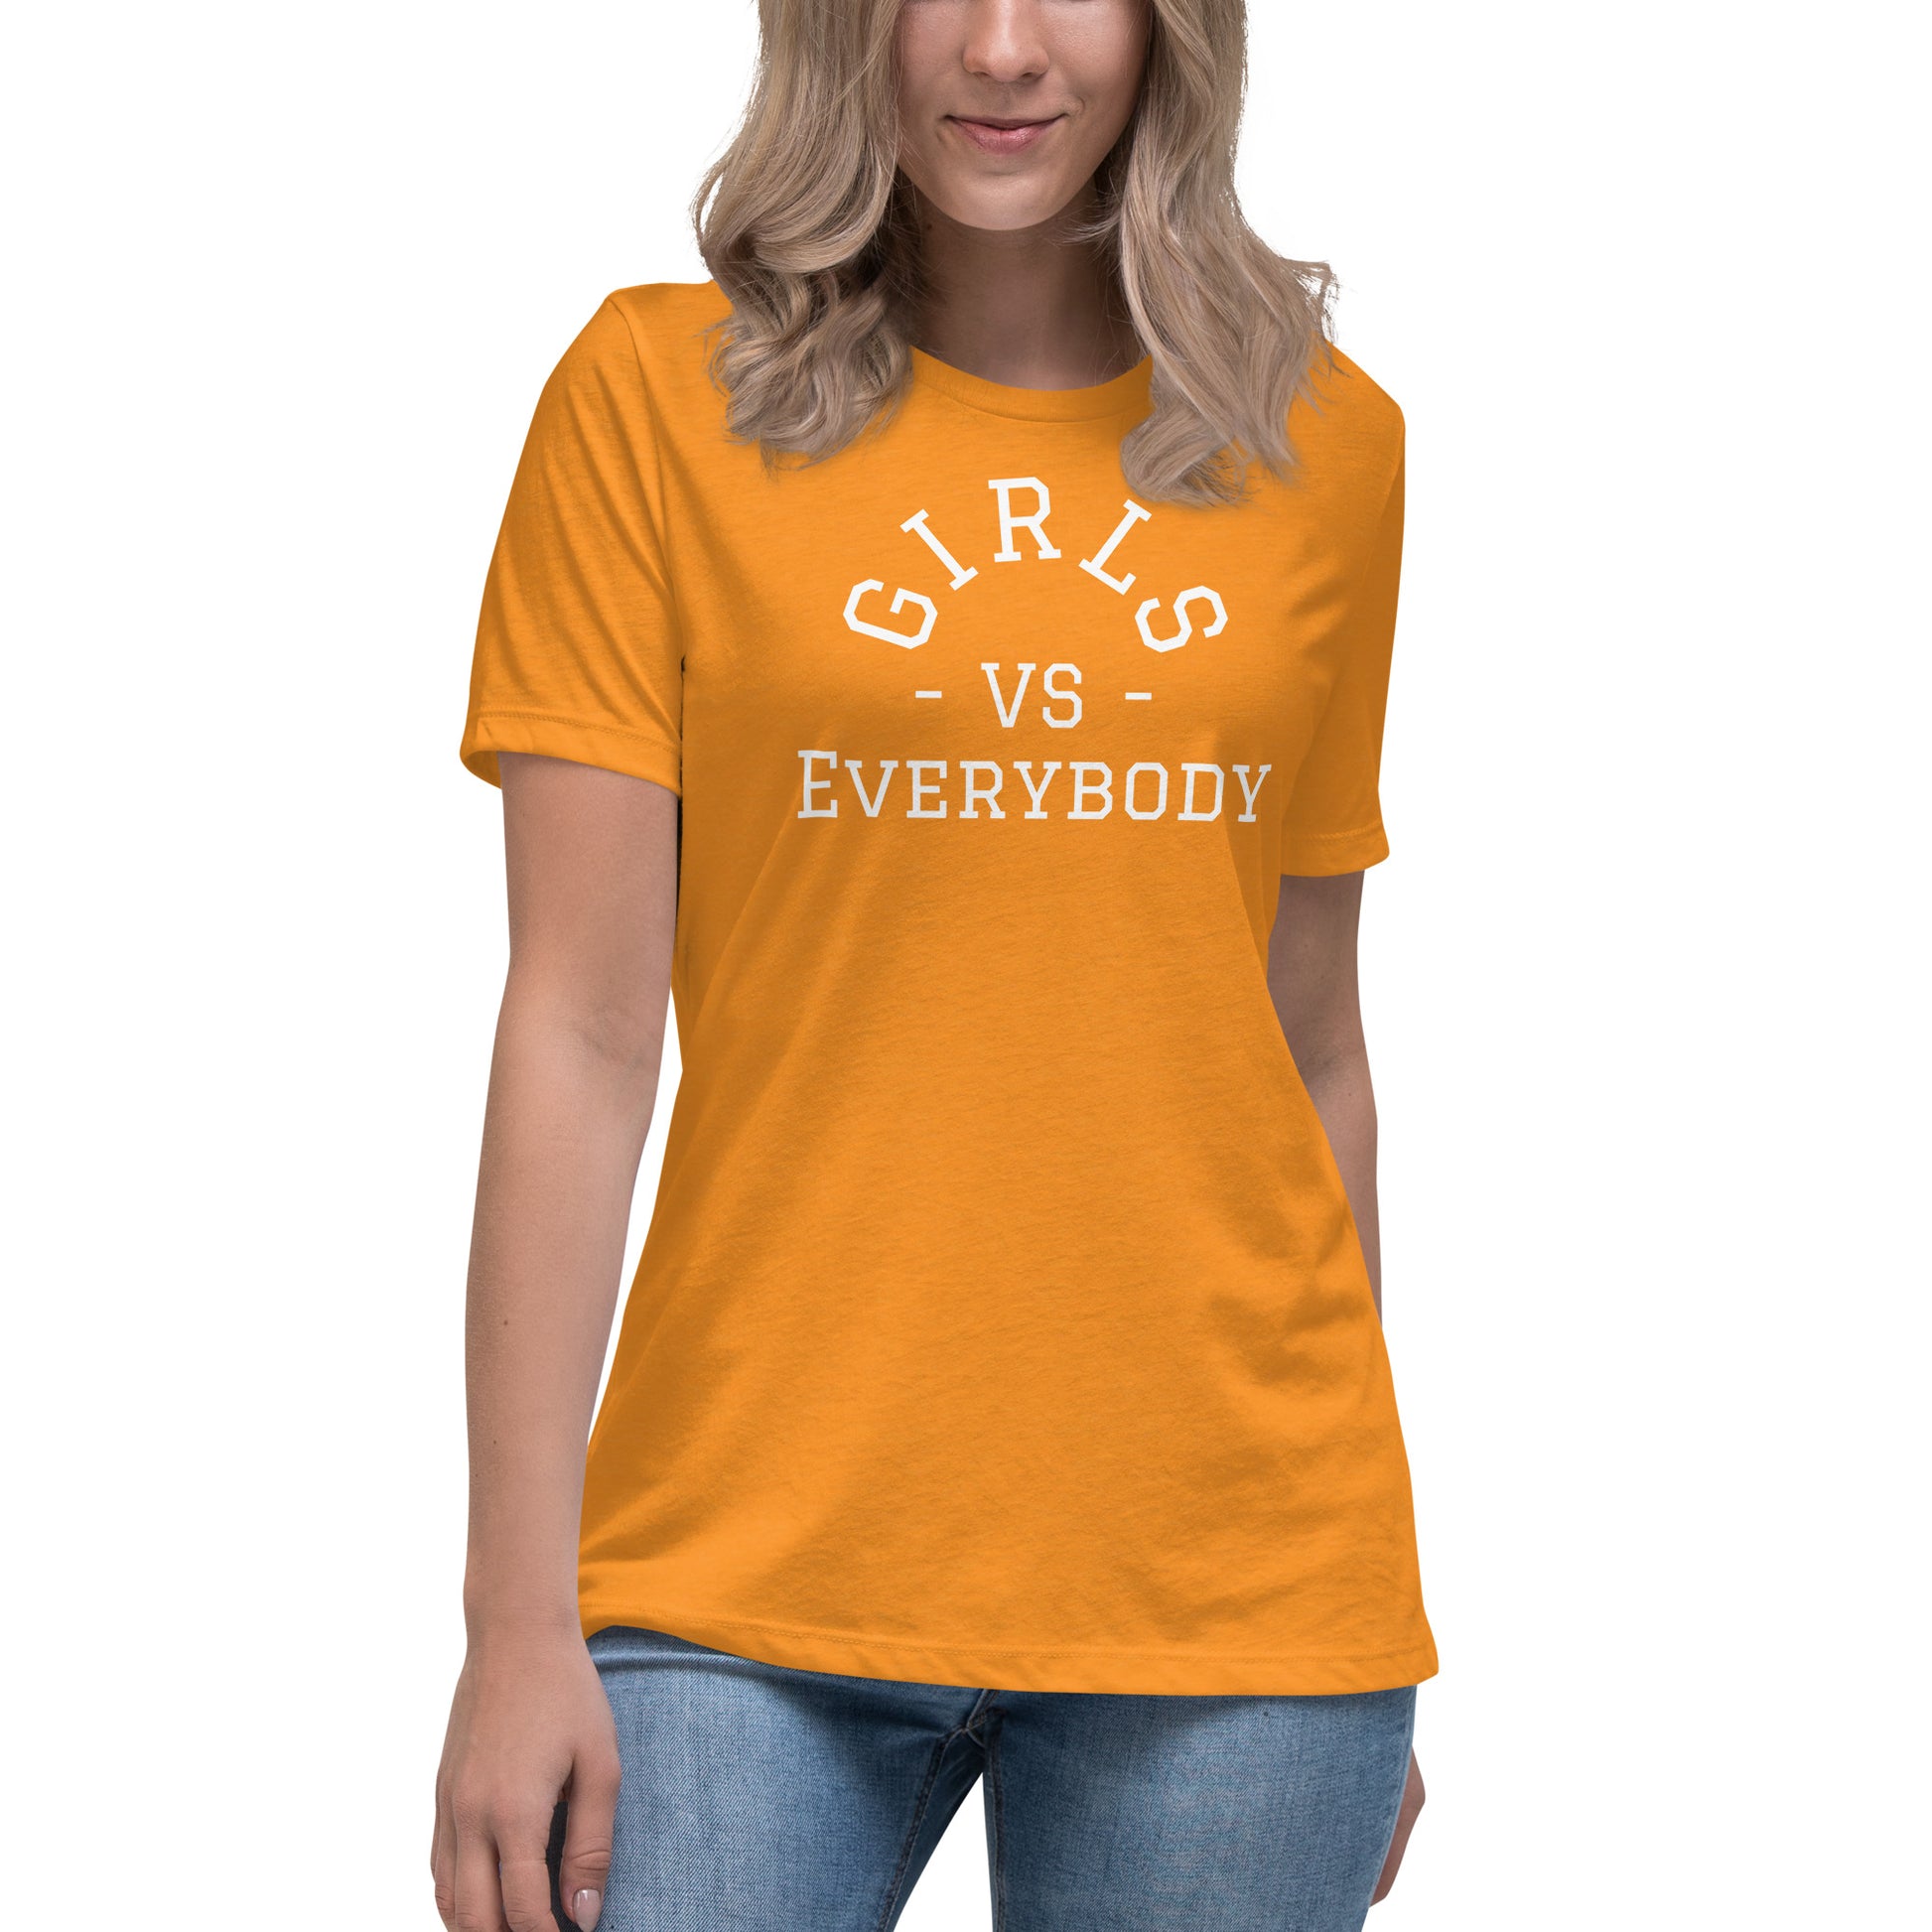 Best women's orange-marmalade short sleeve graphic tee shirt that says "Girls VS Everybody"